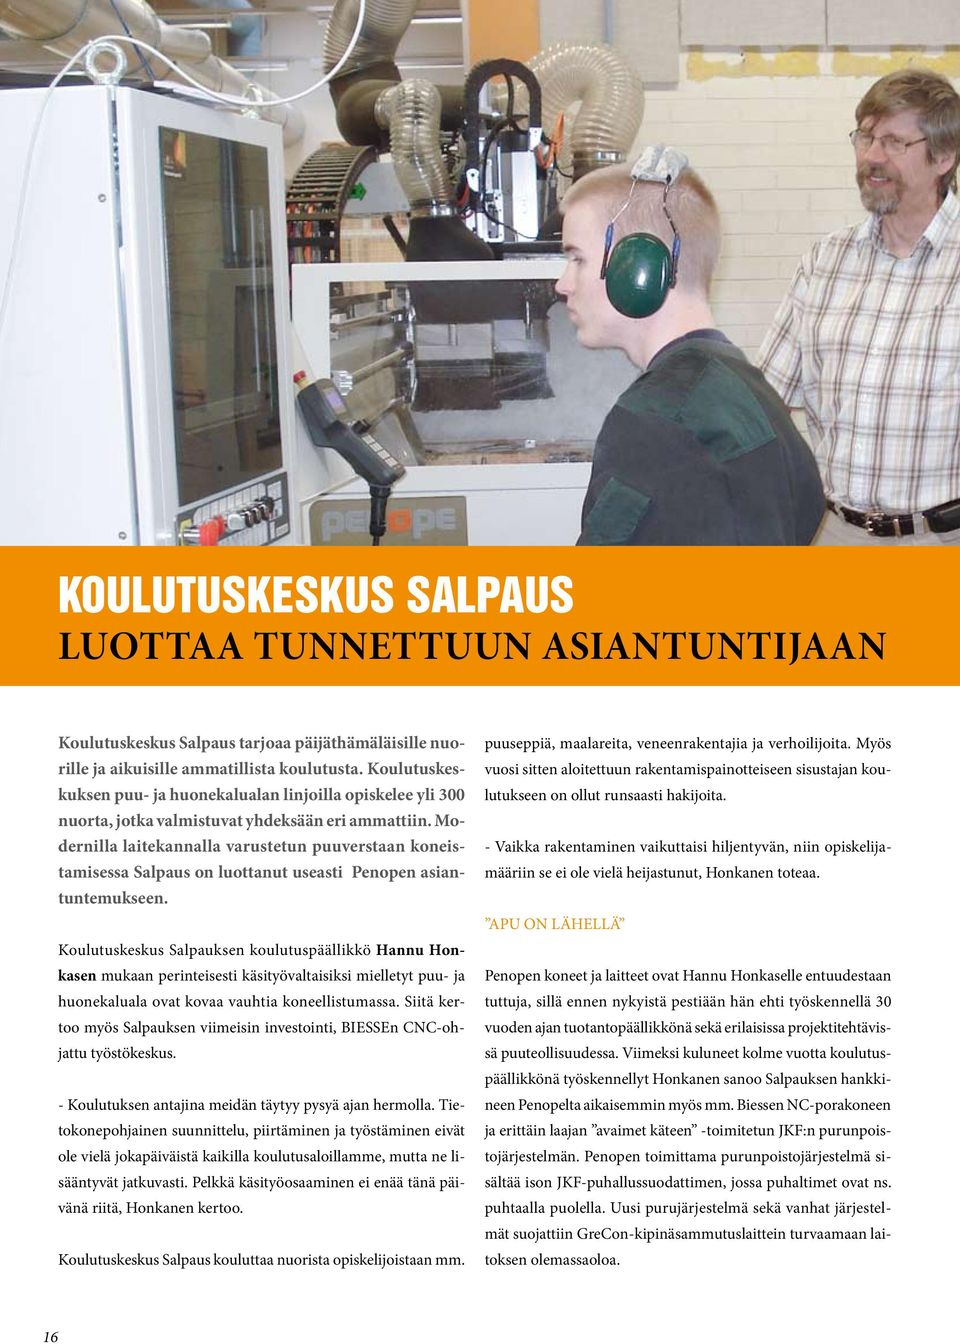 Modernilla laitekannalla varustetun puuverstaan koneistamisessa Salpaus on luottanut useasti Penopen asiantuntemukseen.